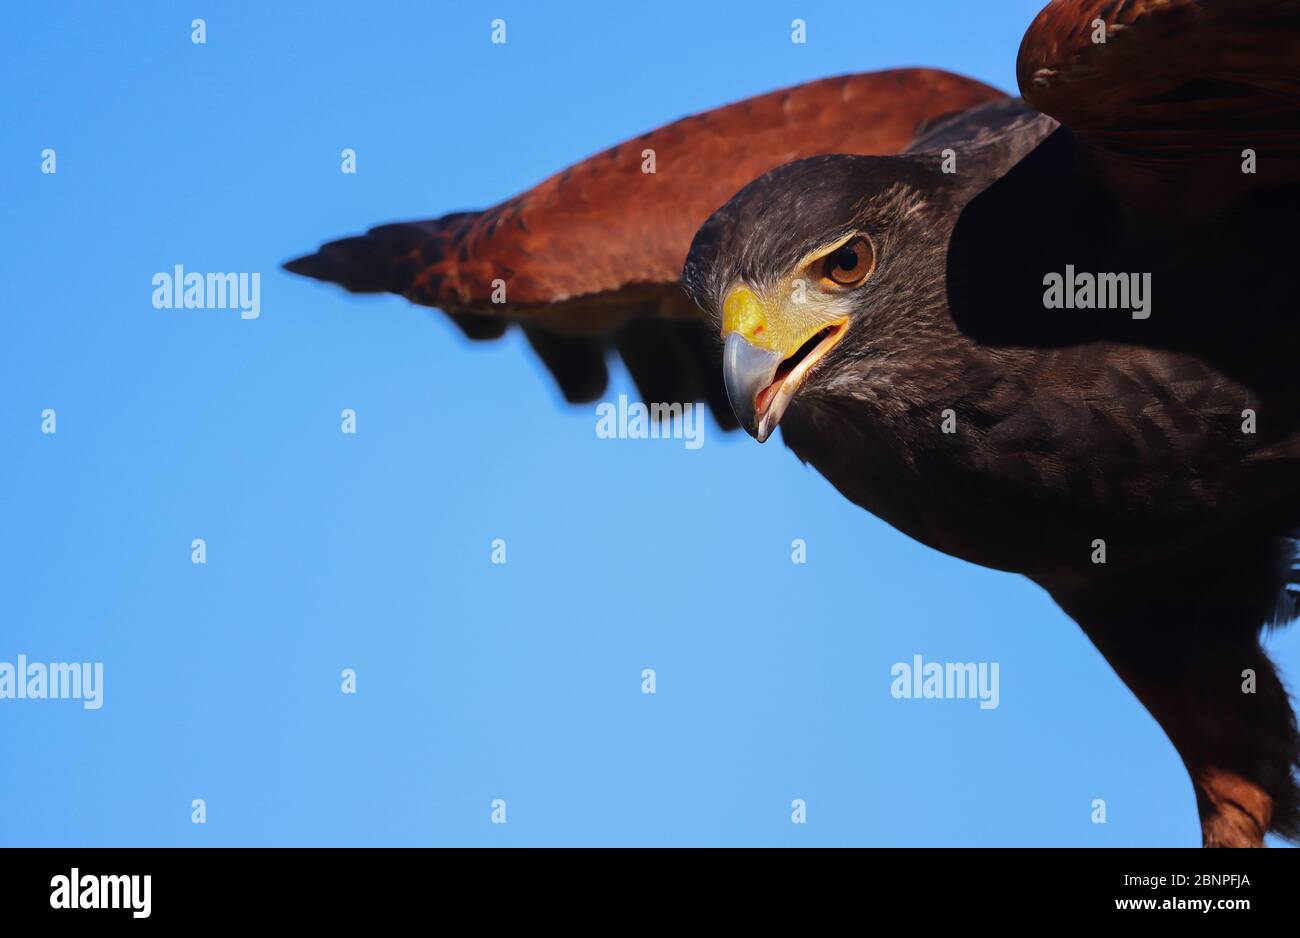 Primo piano di un Harris Hawk che sta per volare, ala estesa; marrone scuro con spalle castagne, occhio intenso, cielo blu. Spazio di copia. Fills1/2 Foto Stock